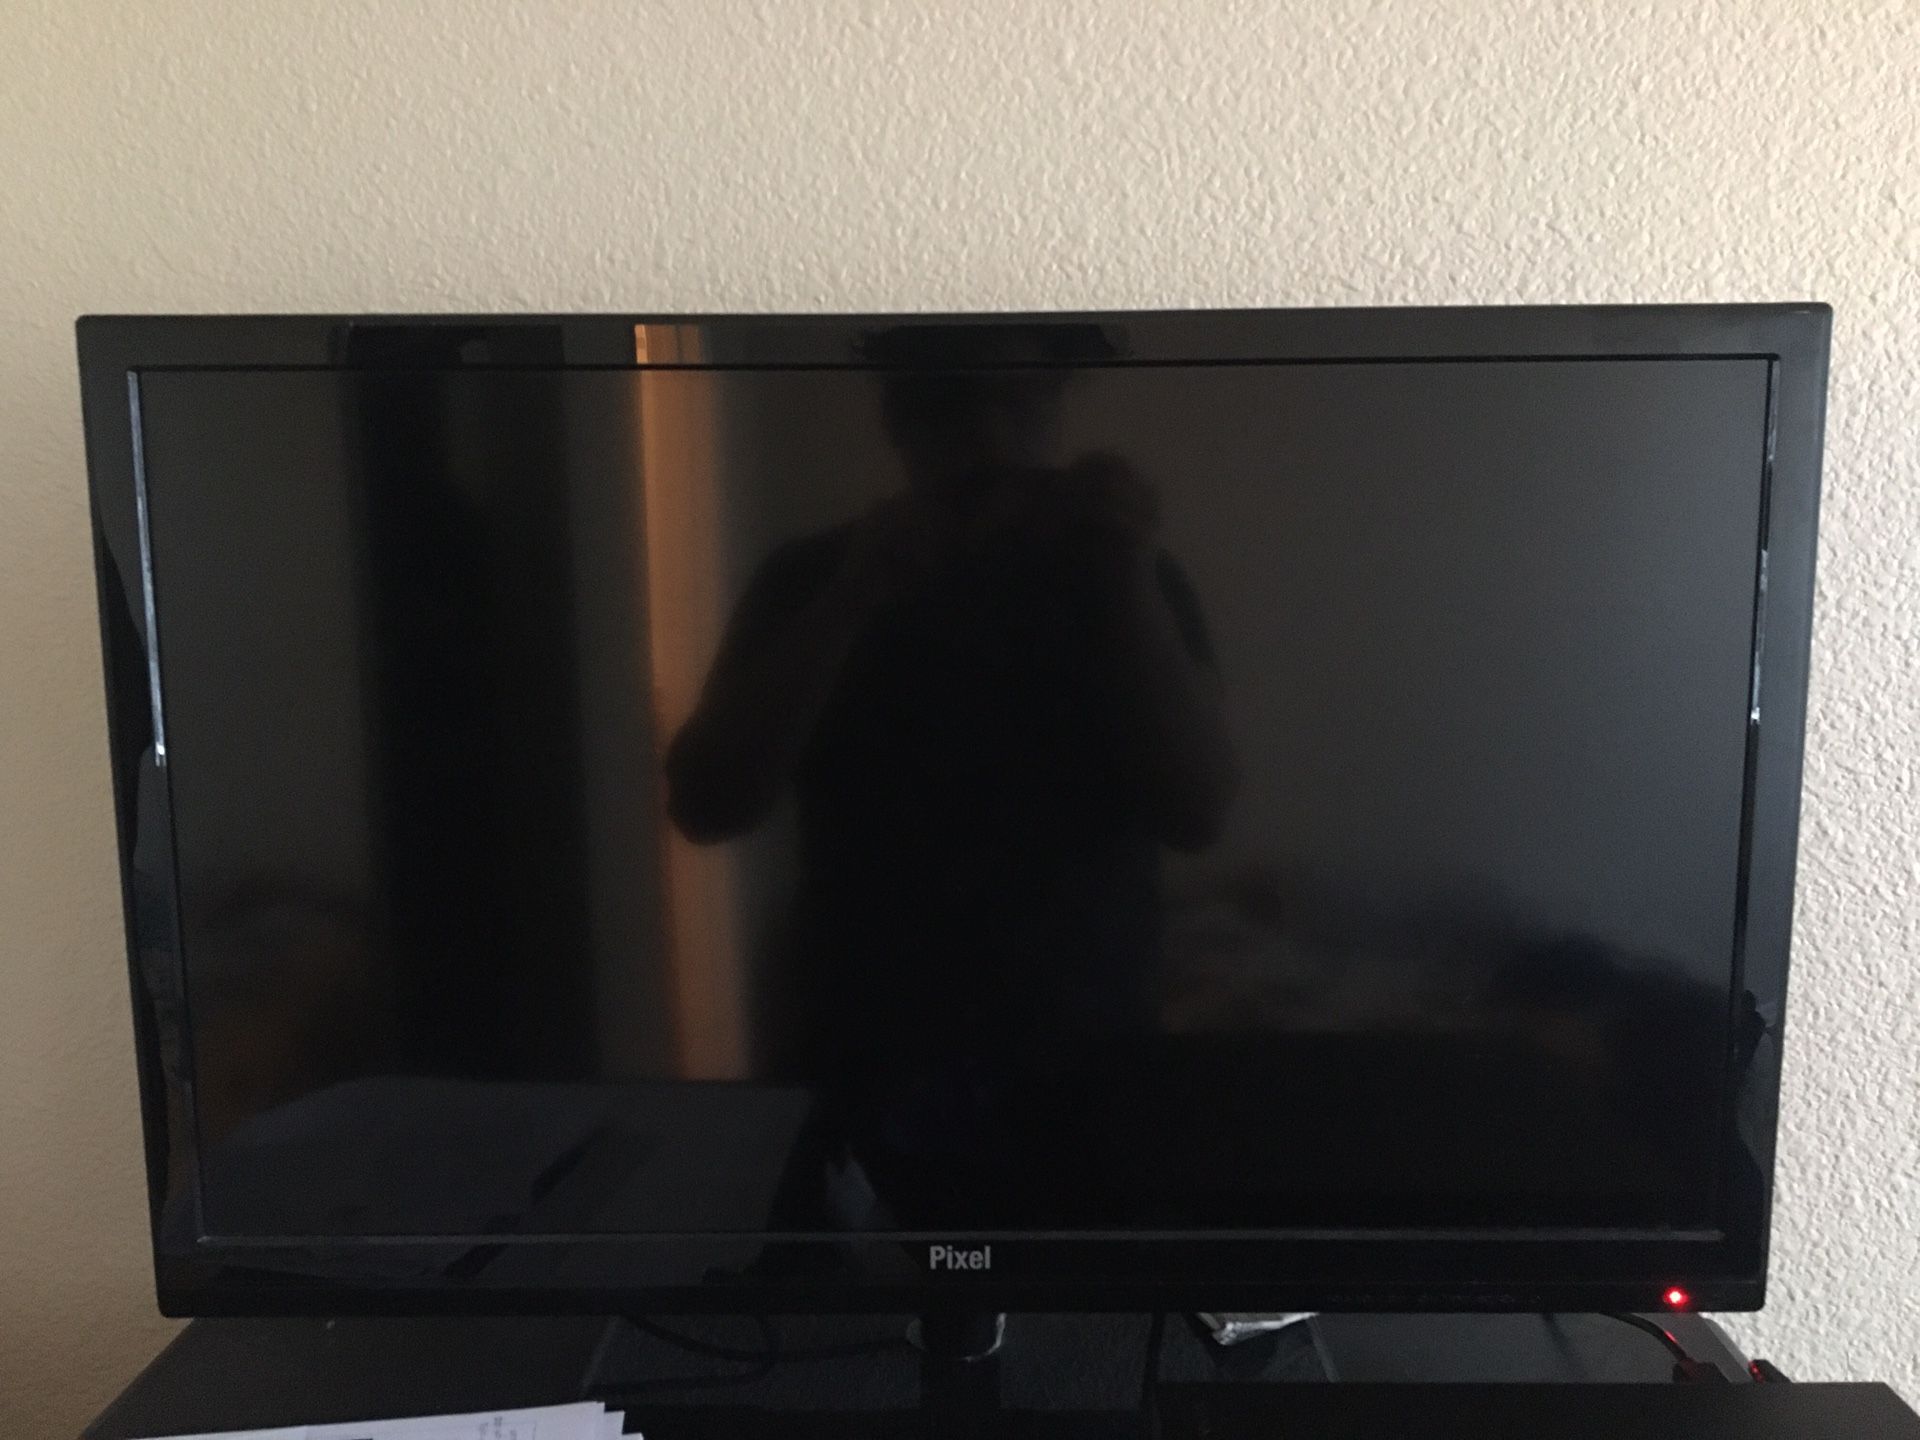 Pixel 32” led flatscreen Tv